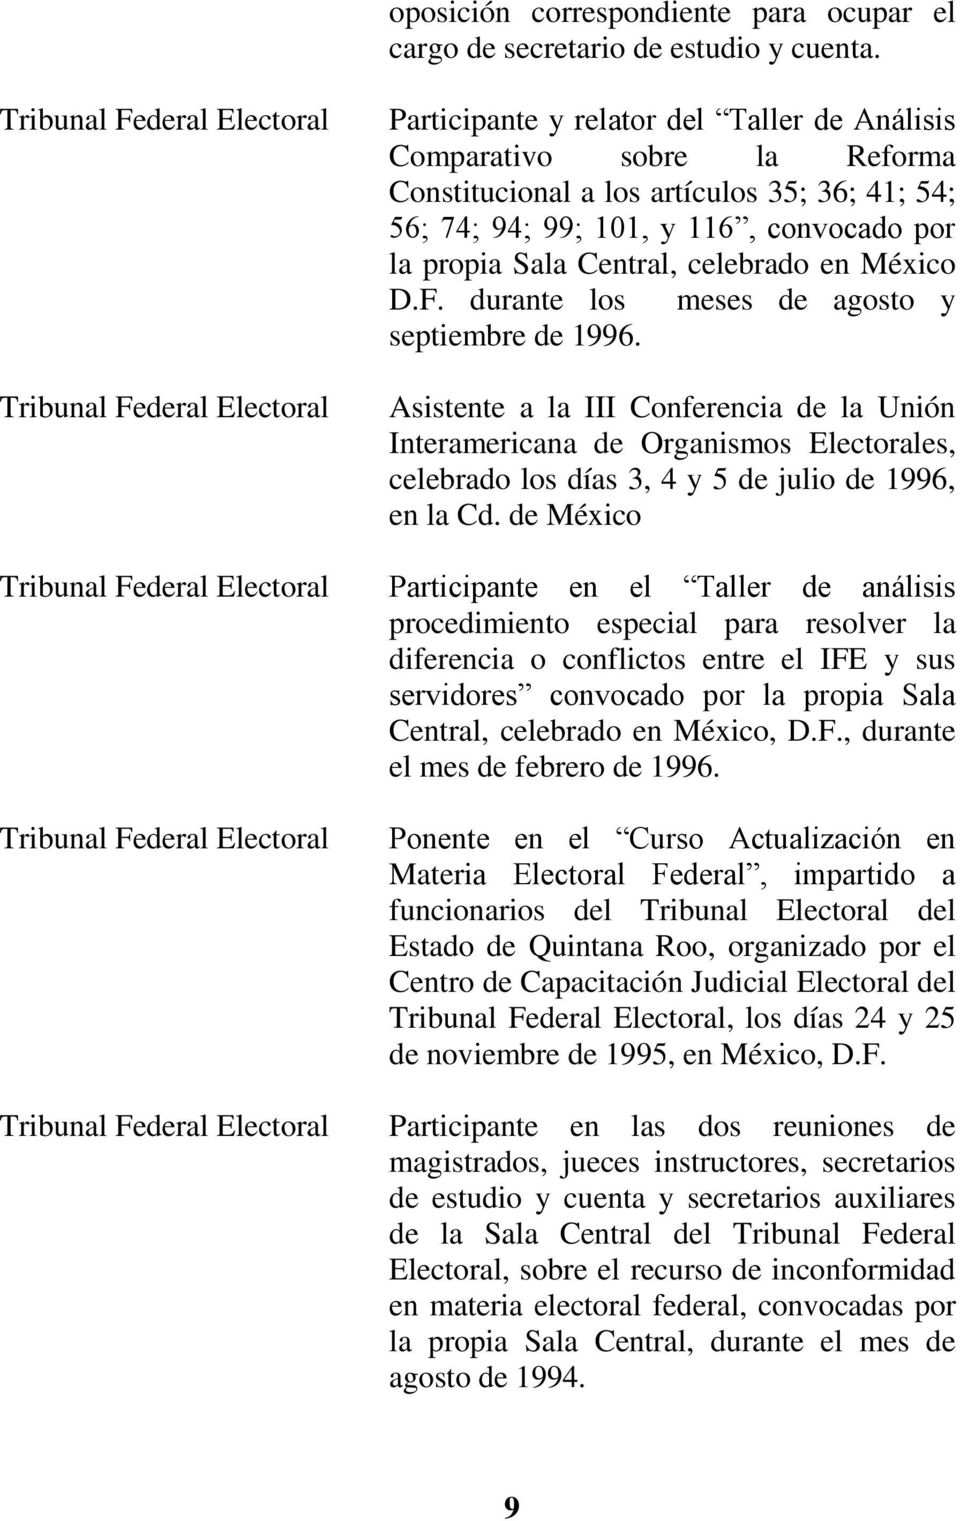 los artículos 35; 36; 41; 54; 56; 74; 94; 99; 101, y 116, convocado por la propia Sala Central, celebrado en México D.F. durante los meses de agosto y septiembre de 1996.